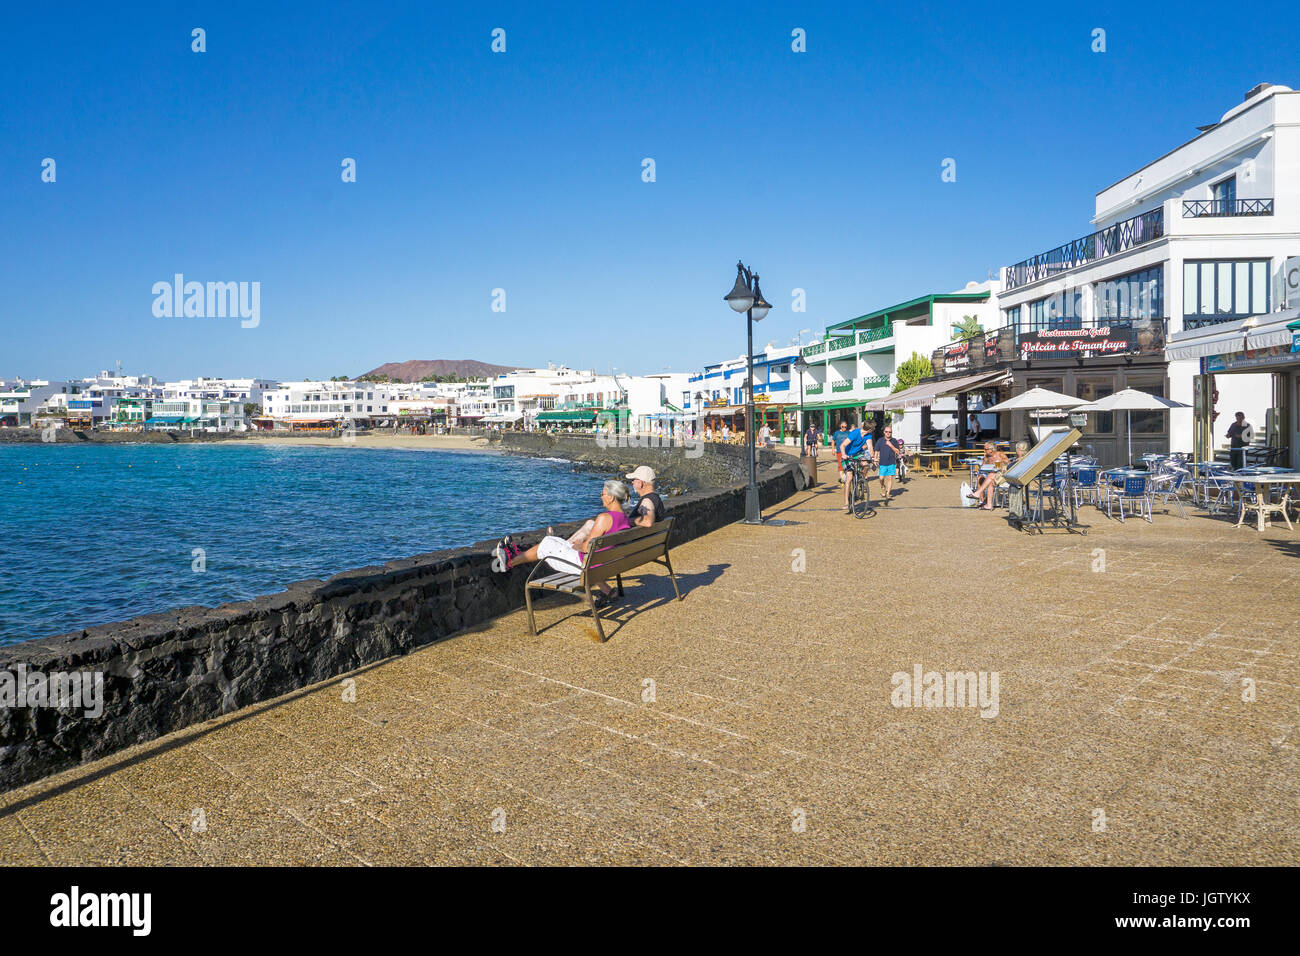 Promenade mit Restaurants und Geschäften am Playa Blanca, Lanzarote, Kanarische Inseln, Spanien, Europa Stockfoto